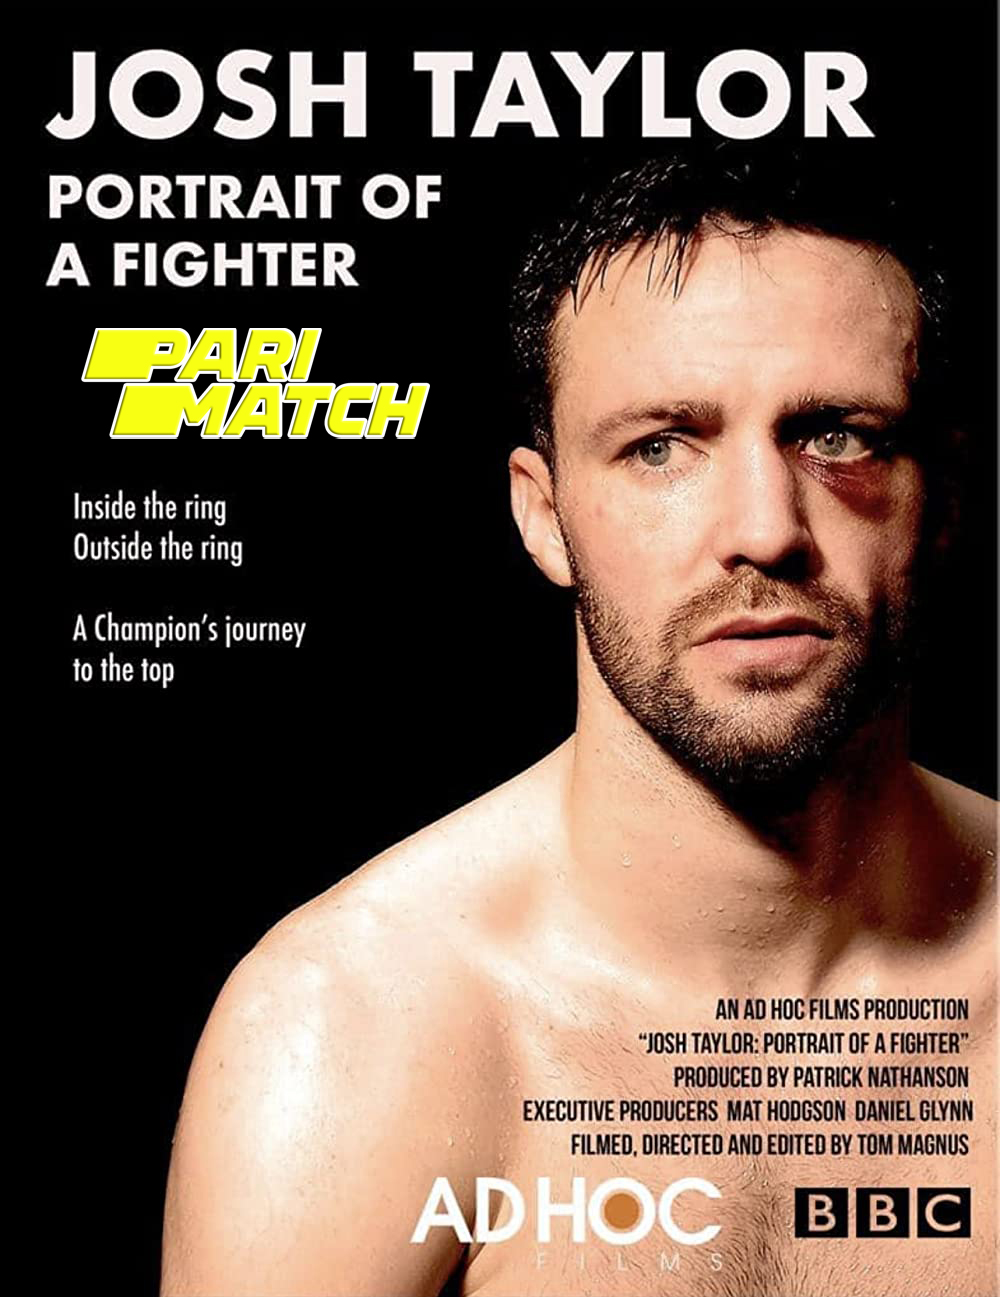 Josh Taylor Portrait of a Fighter (2022) Bengali Dubbed (VO) [PariMatch] 720p WEBRip Download